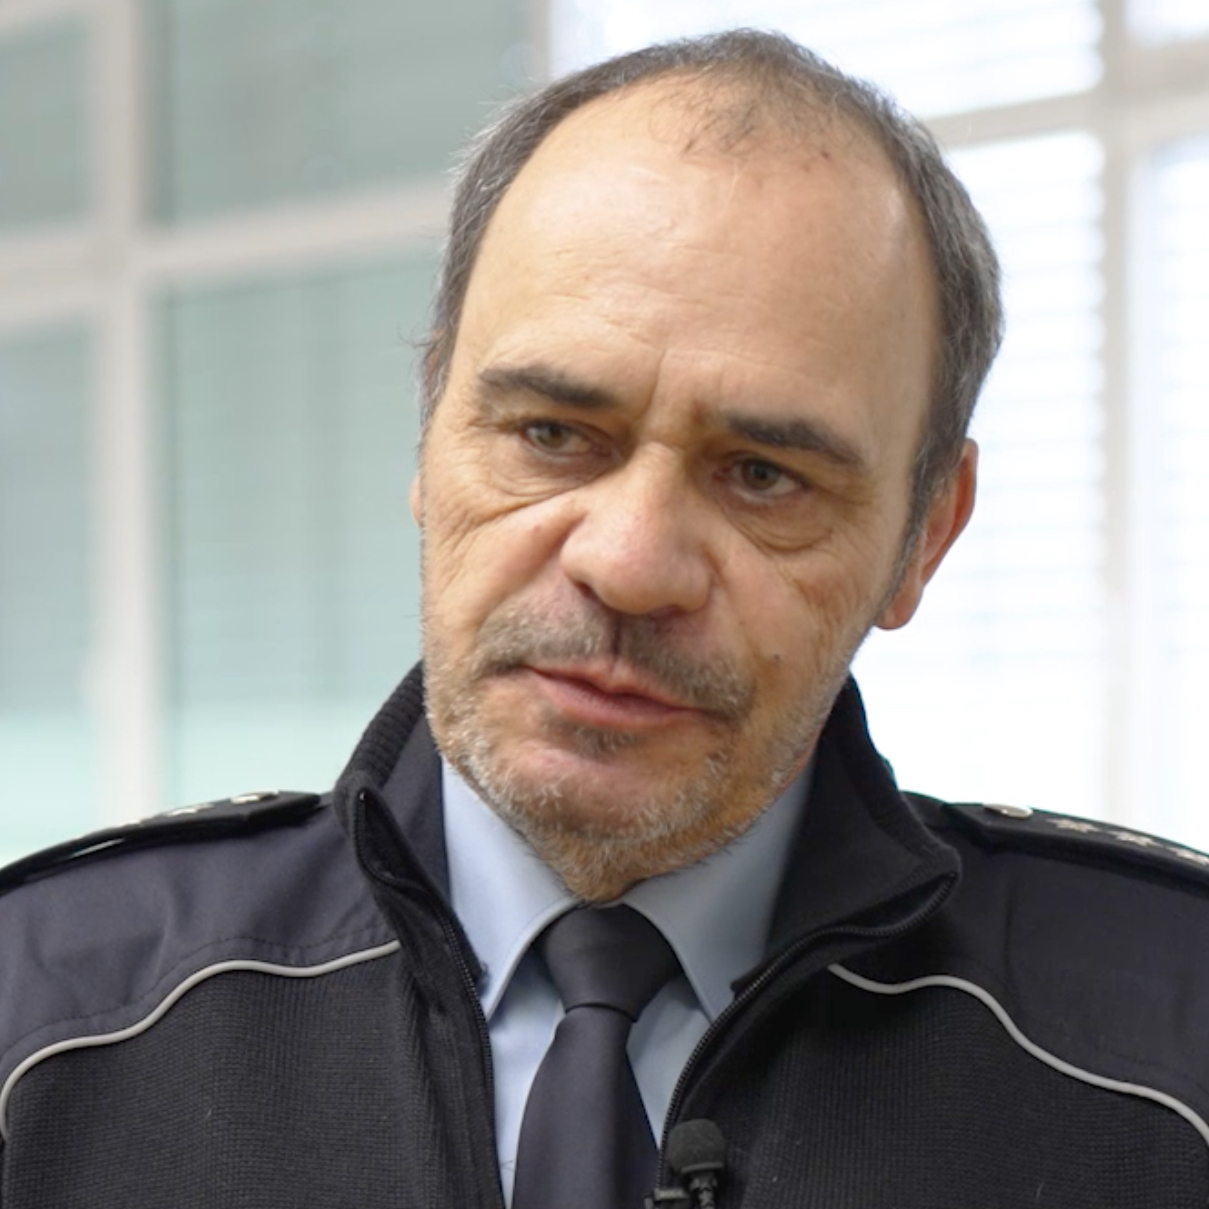 Polizist Jürgen Groten steht vor einer Bildschirm-Präsentation.